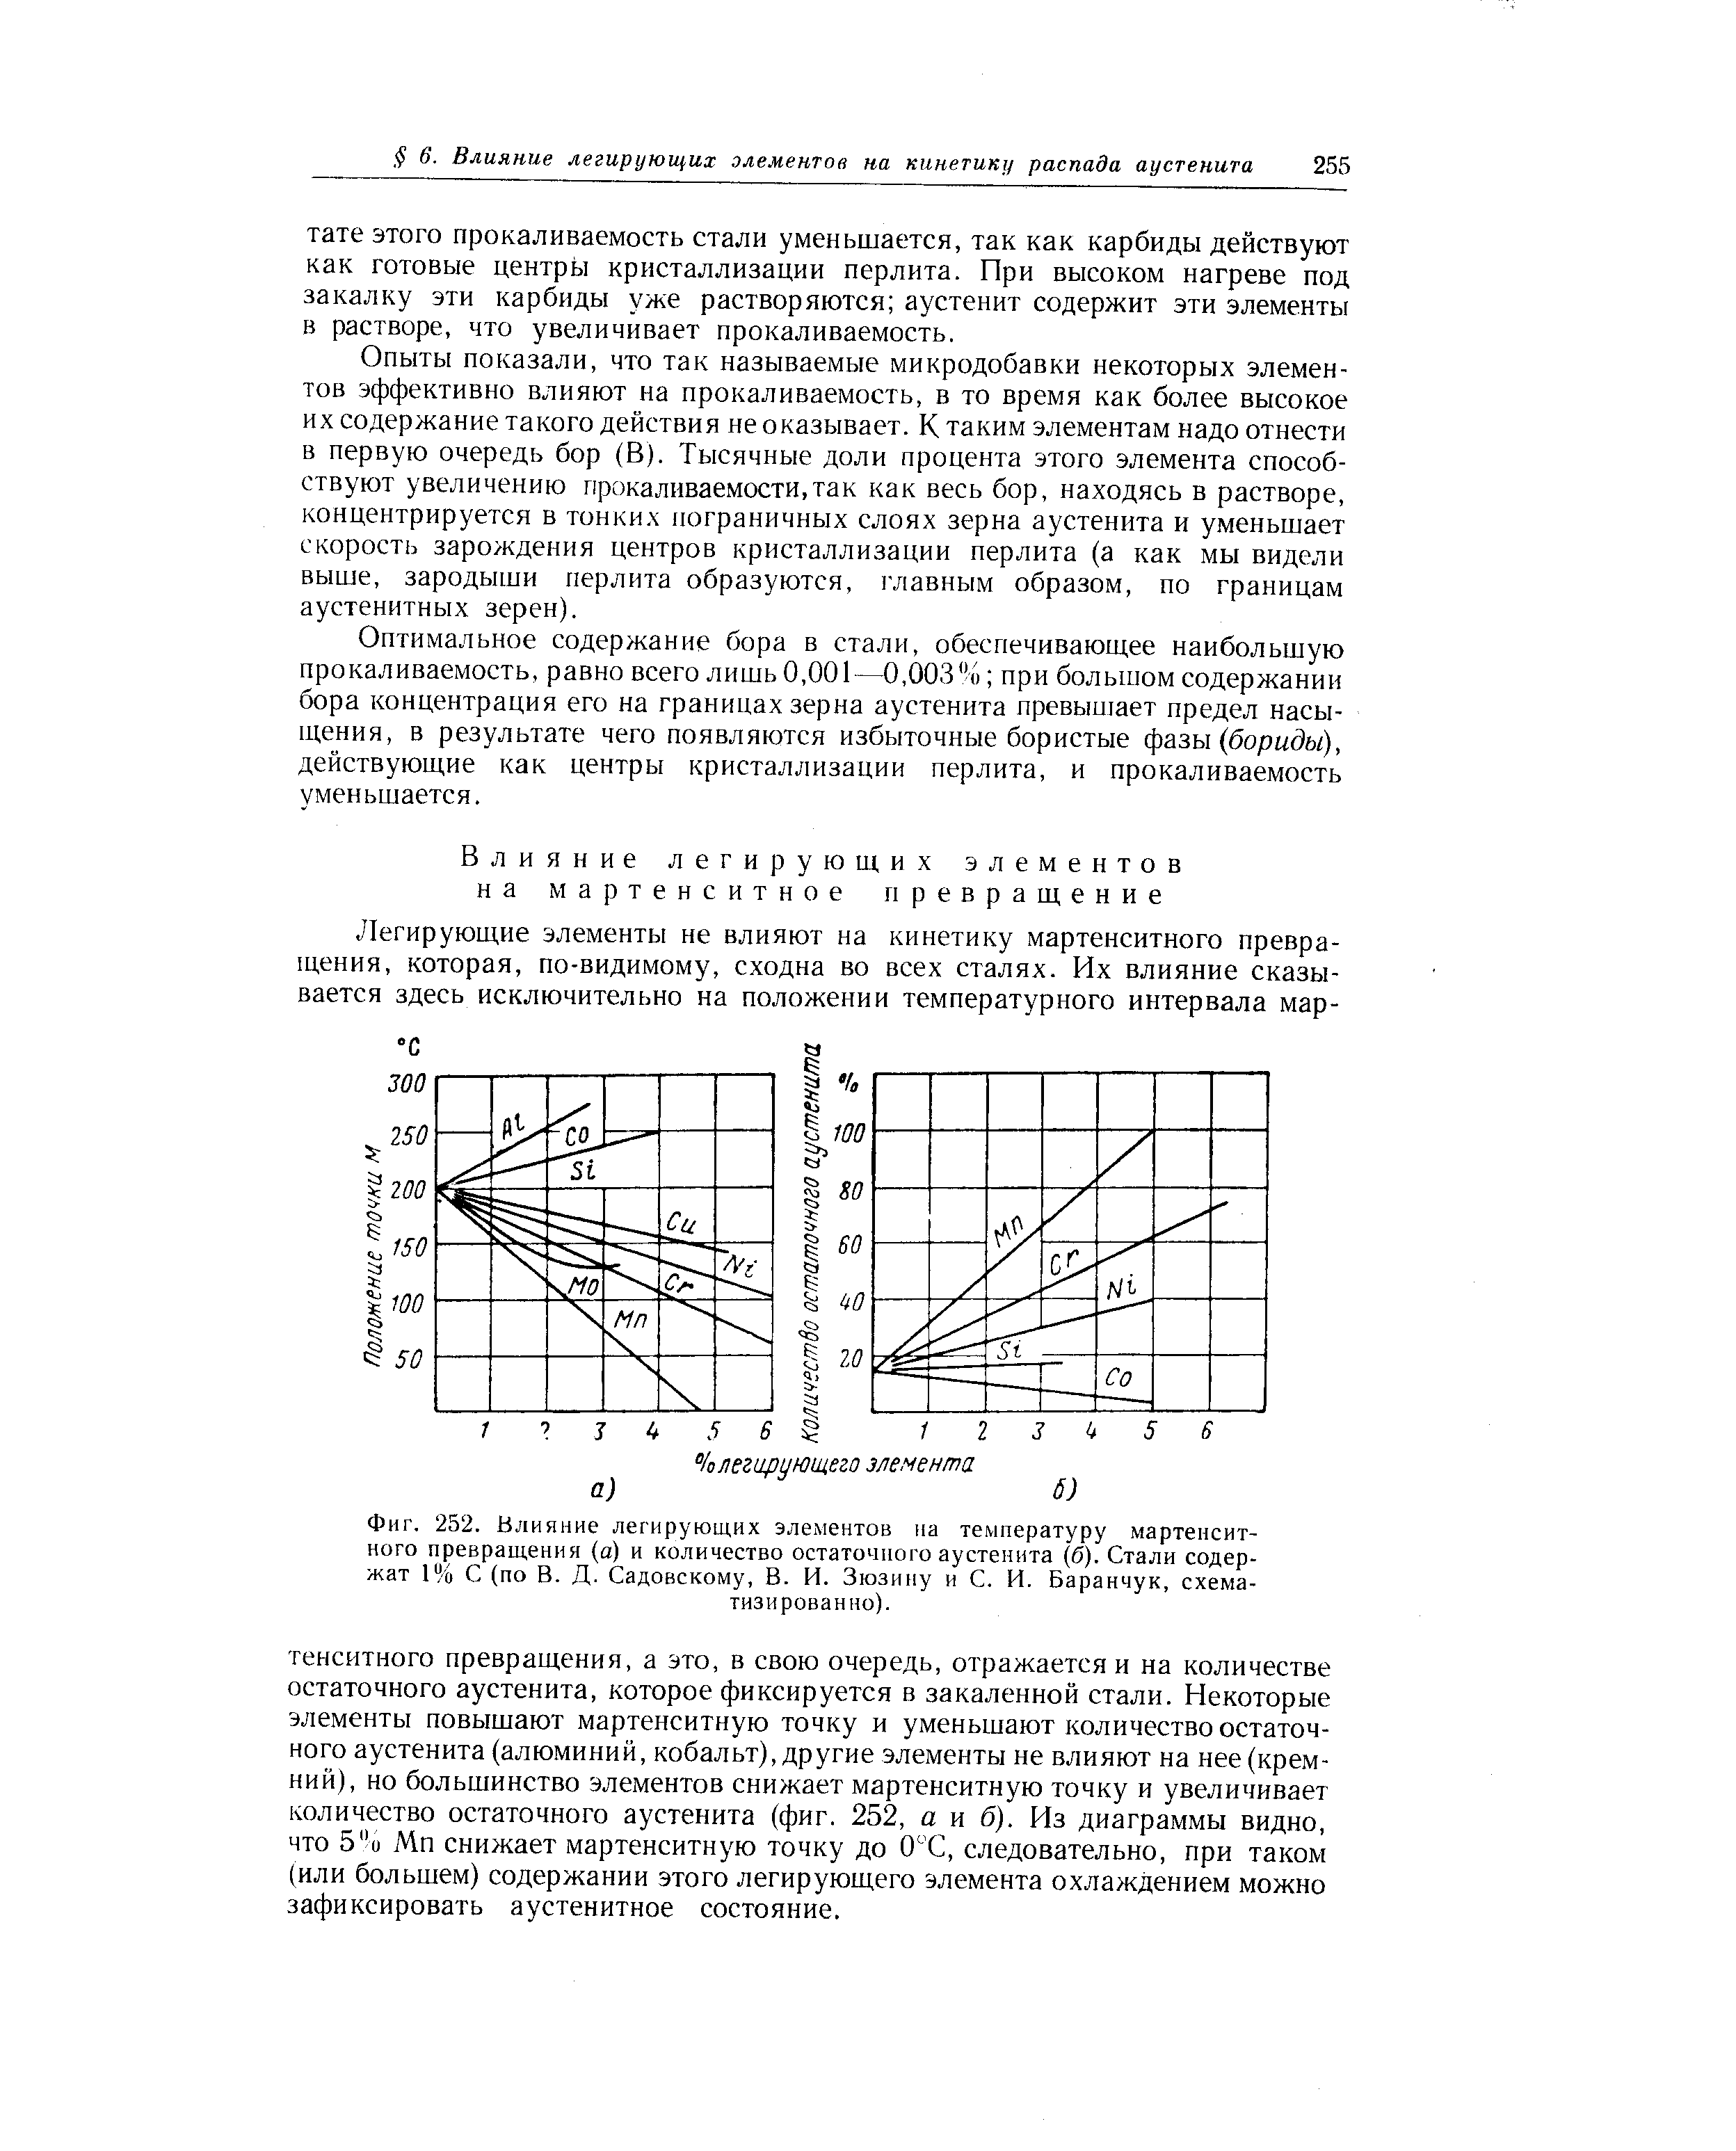 Фиг. 252. <a href="/info/58162">Влияние легирующих элементов</a> на <a href="/info/413499">температуру мартенситного превращения</a> (а) и количество остаточного аустенита (б). Стали содержат 1% С (по В. Д. Садовскому, В. И. Зюзину и С. И. Баранчук, схема-
